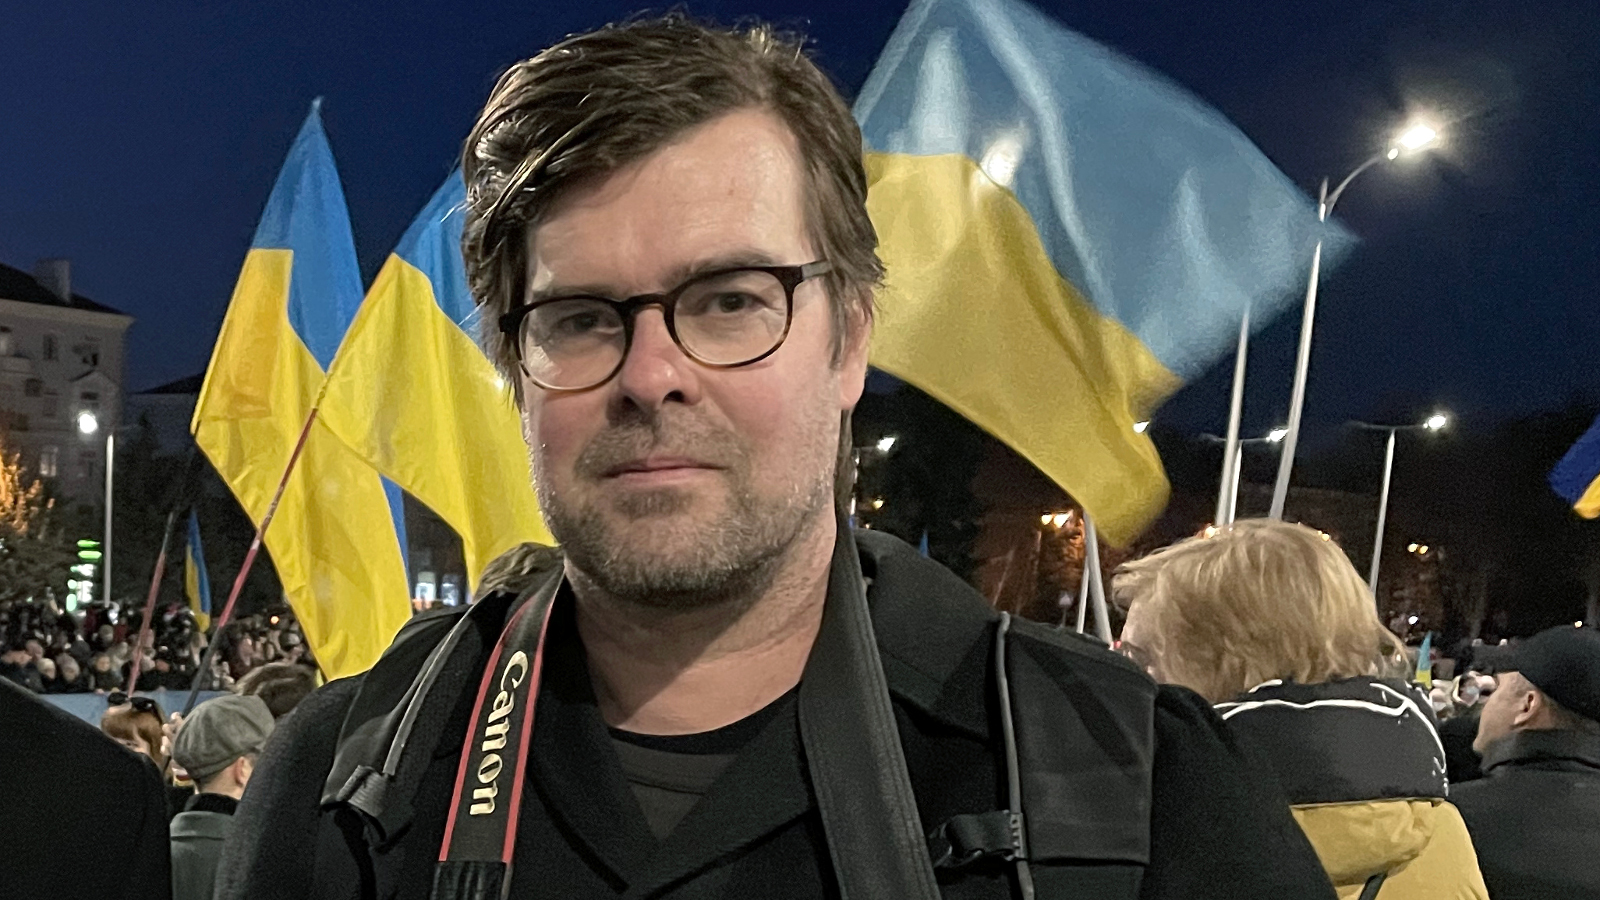 Kuvassa on Antti Hämälinen kameran kanssa ja taustalla liehuvat sini-keltaiset ukrainan liput.